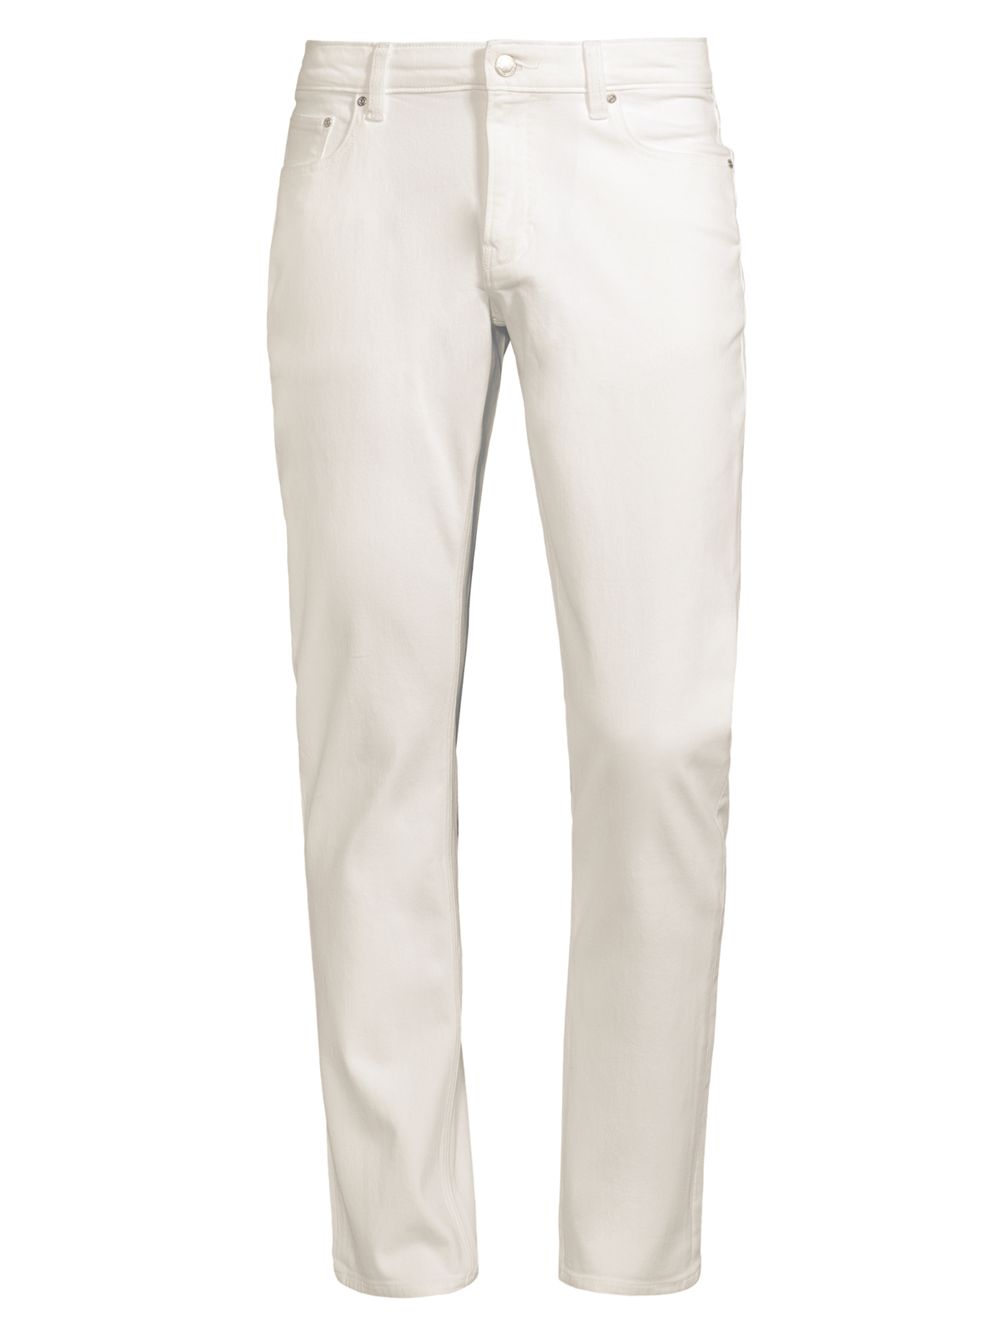 Узкие джинсы Parker с низкой посадкой Michael Kors, белый узкие джинсы с низкой посадкой серый